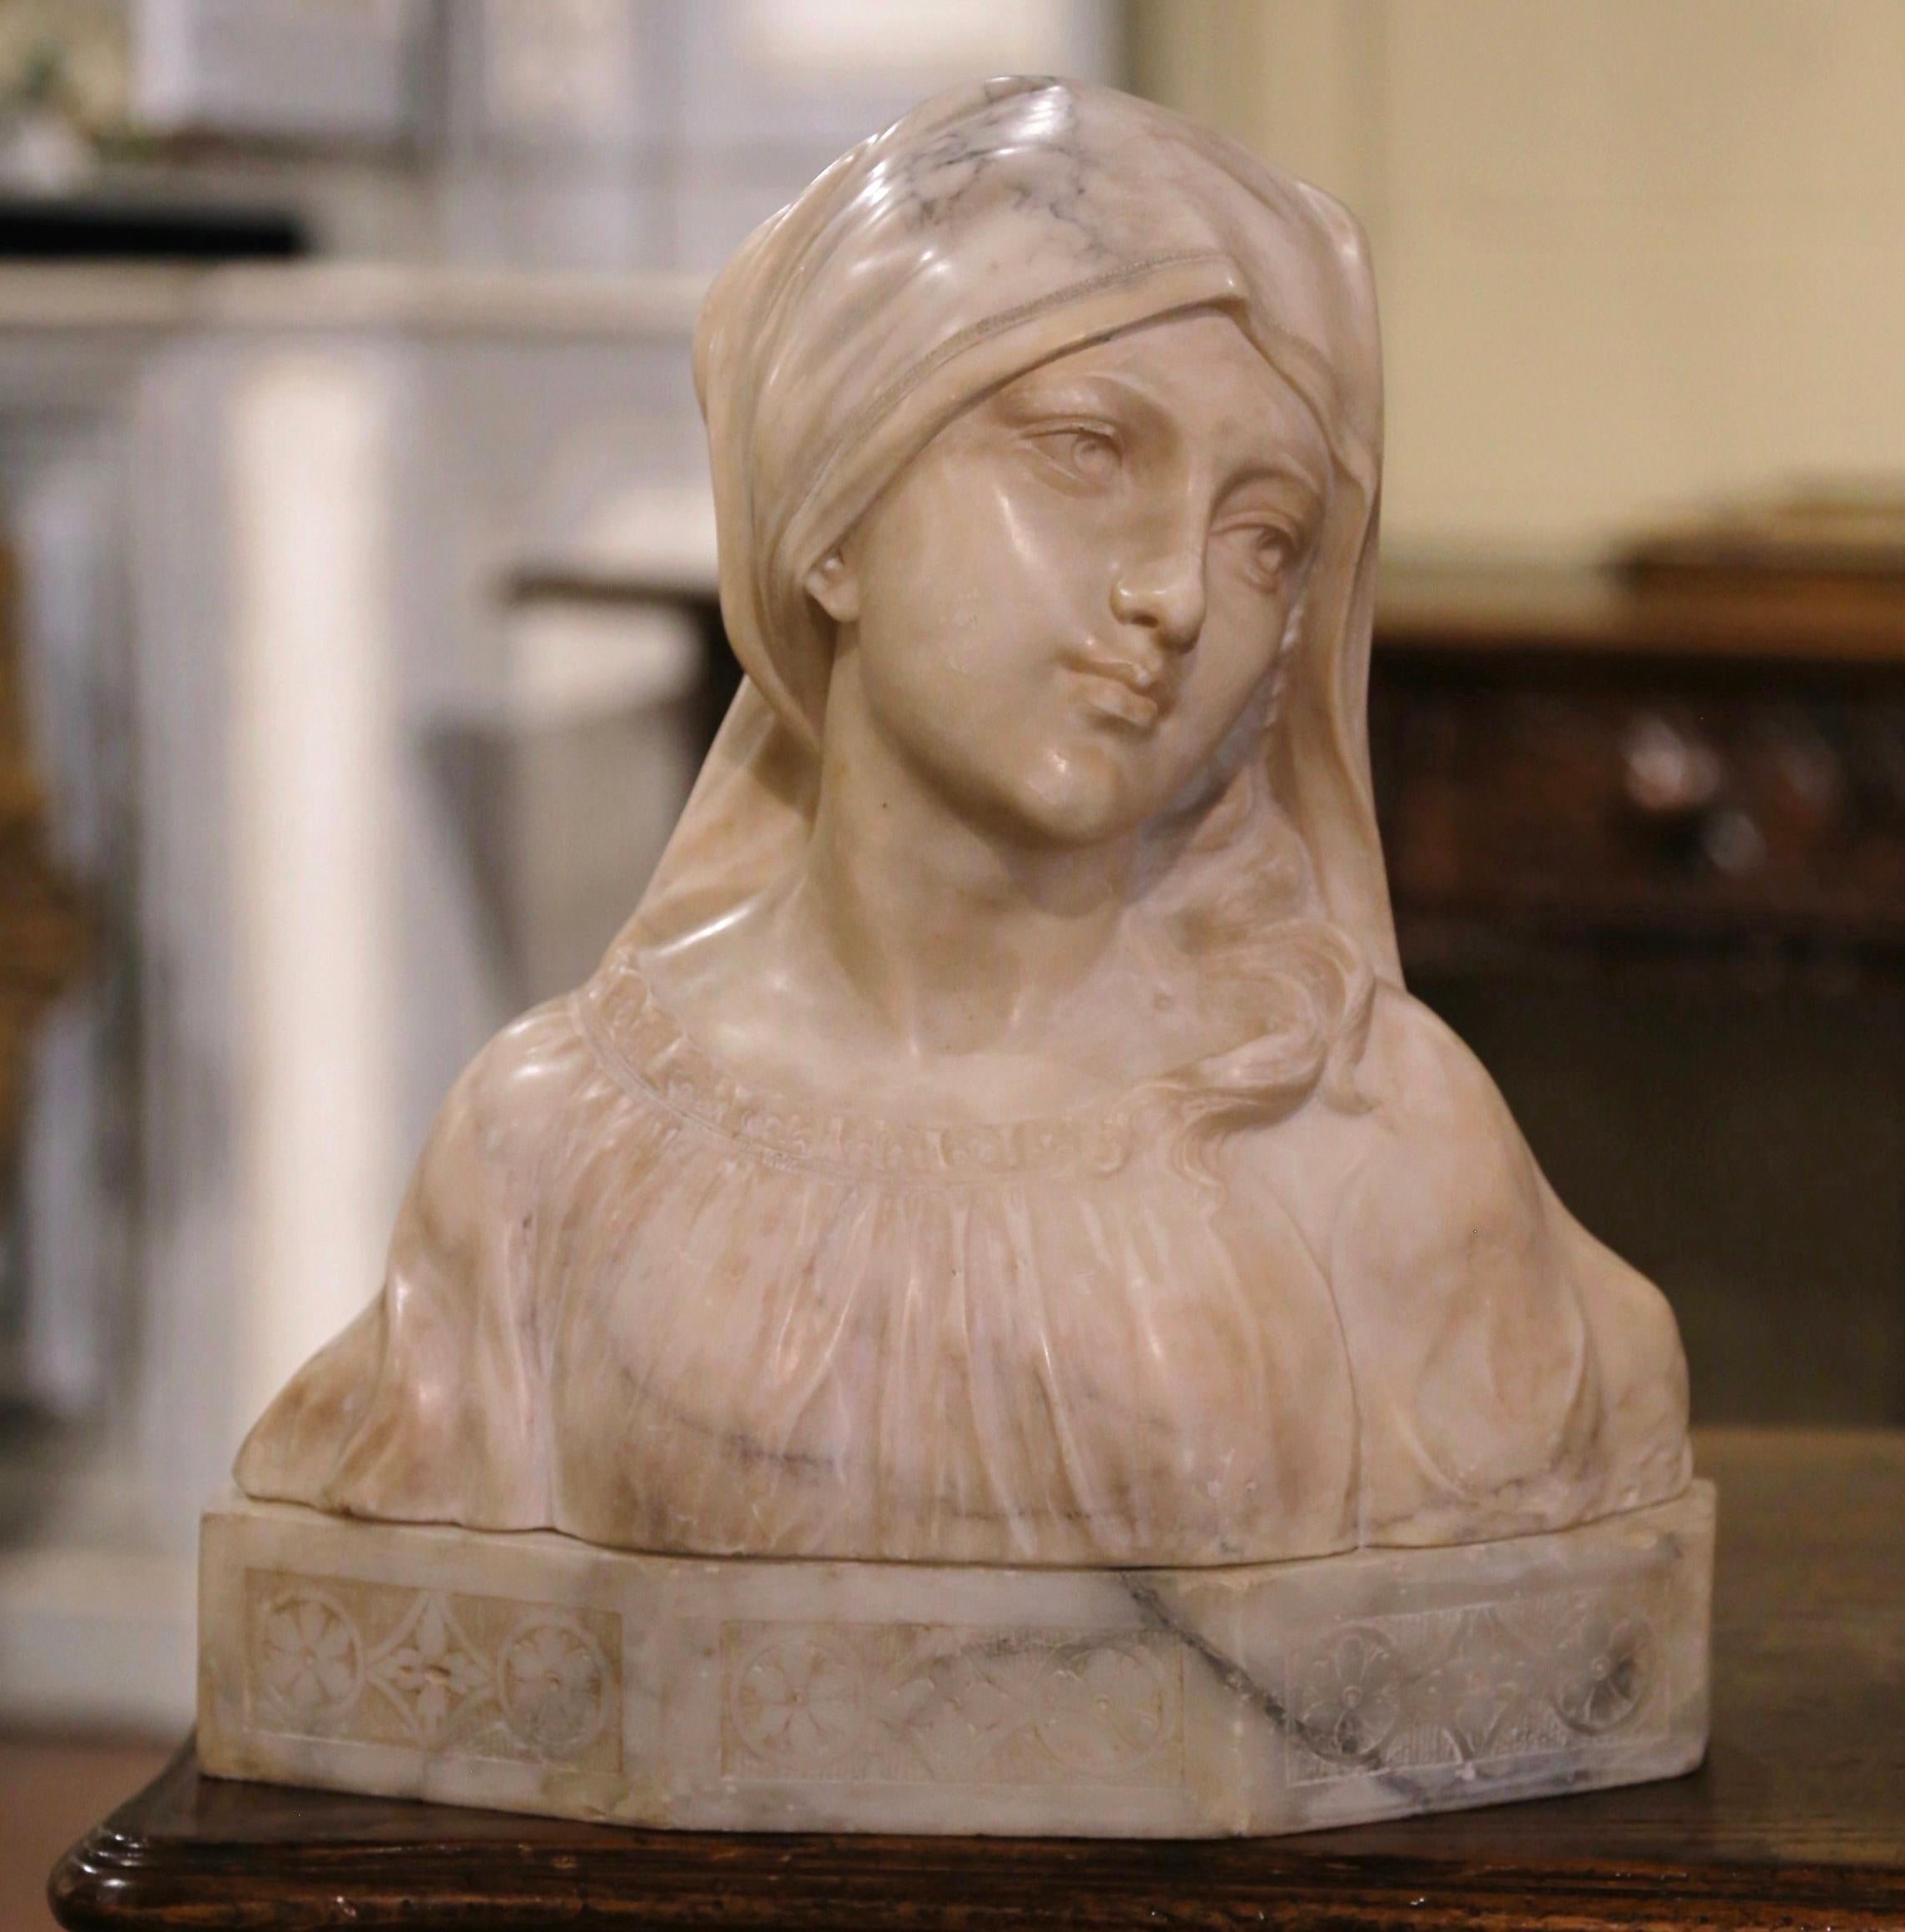 Fabriqué à Florence, en Italie, vers 1910, ce buste en marbre blanc de Carrare en deux parties est une véritable représentation de l'élégance européenne. La sculpture figurative antique, signée au dos par l'artiste A. Cipriani, représente le visage